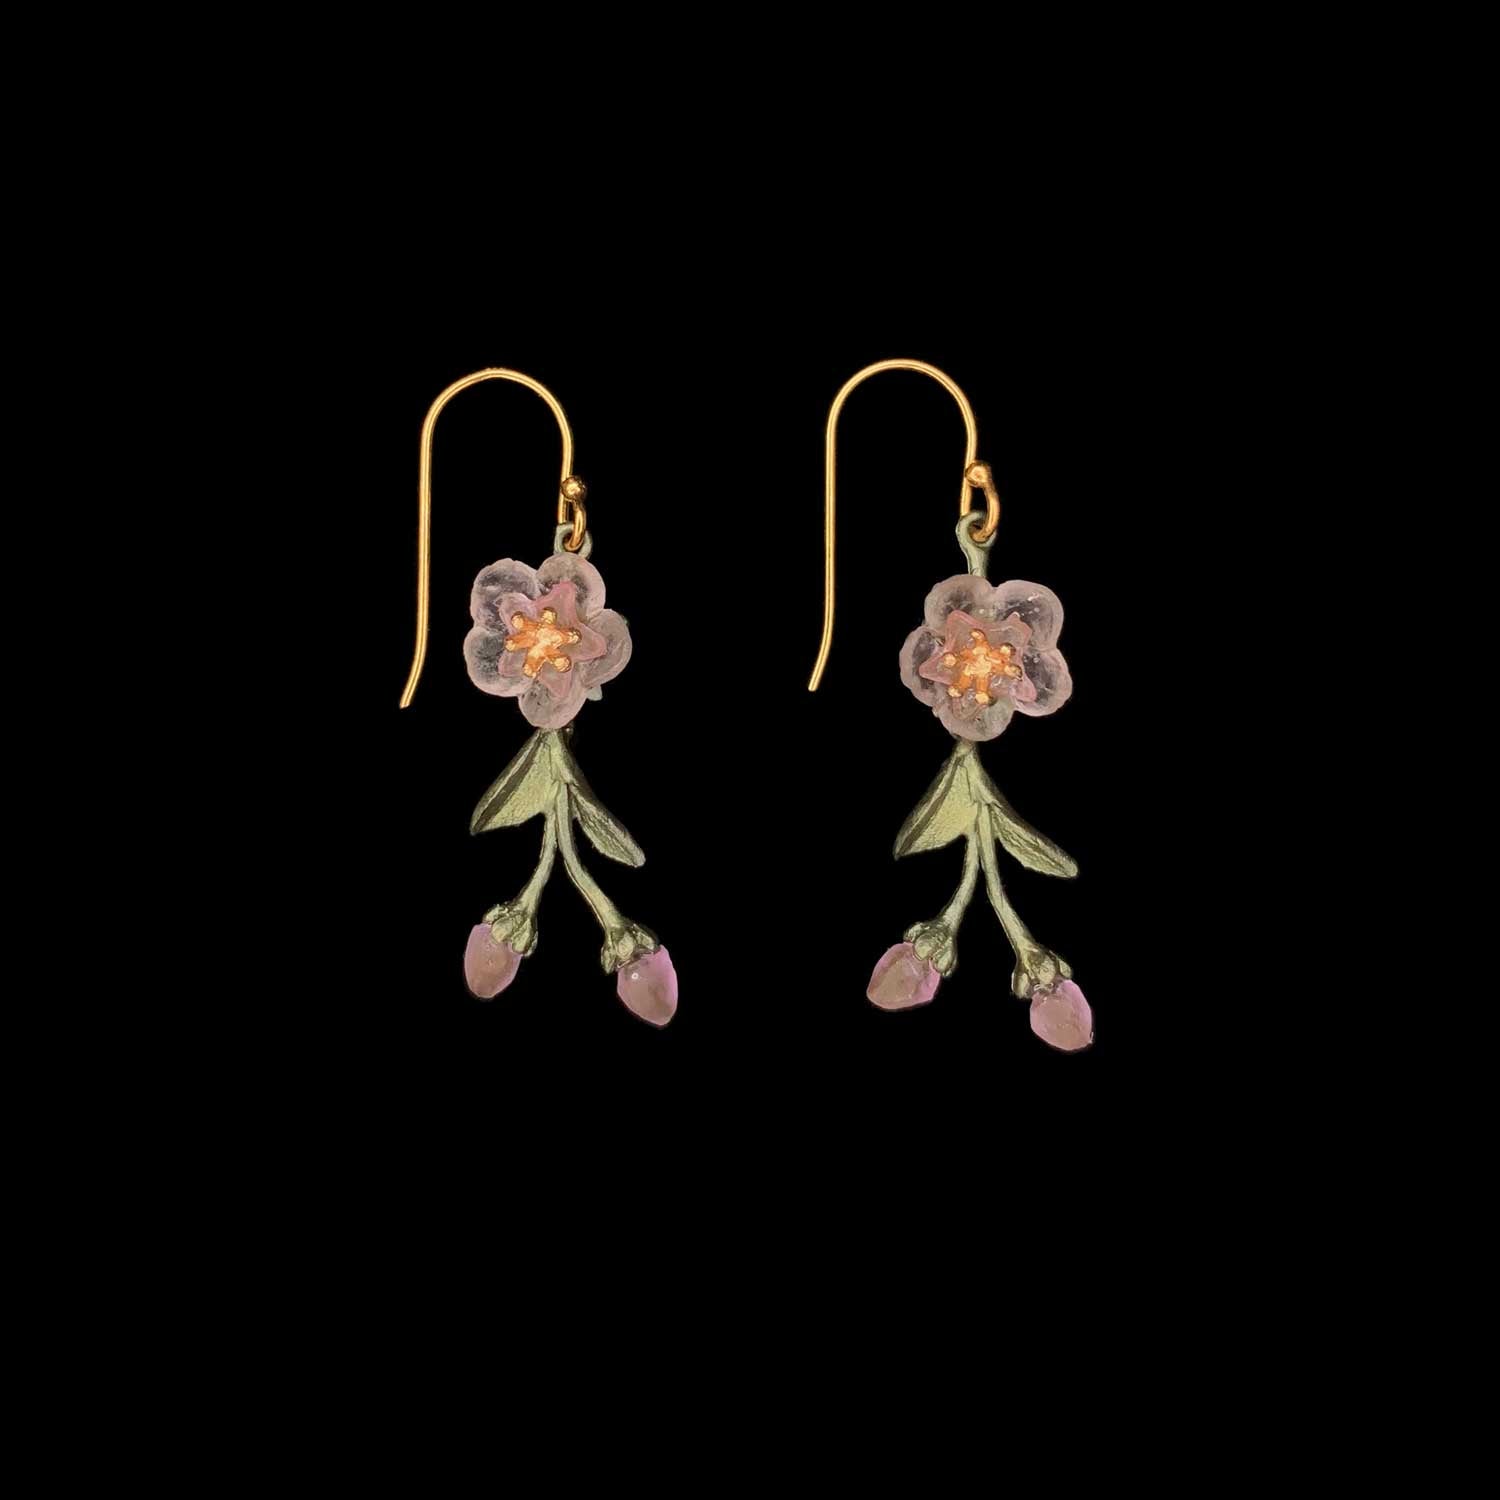 Peach Blossom Earrings - Flower Drop Wire